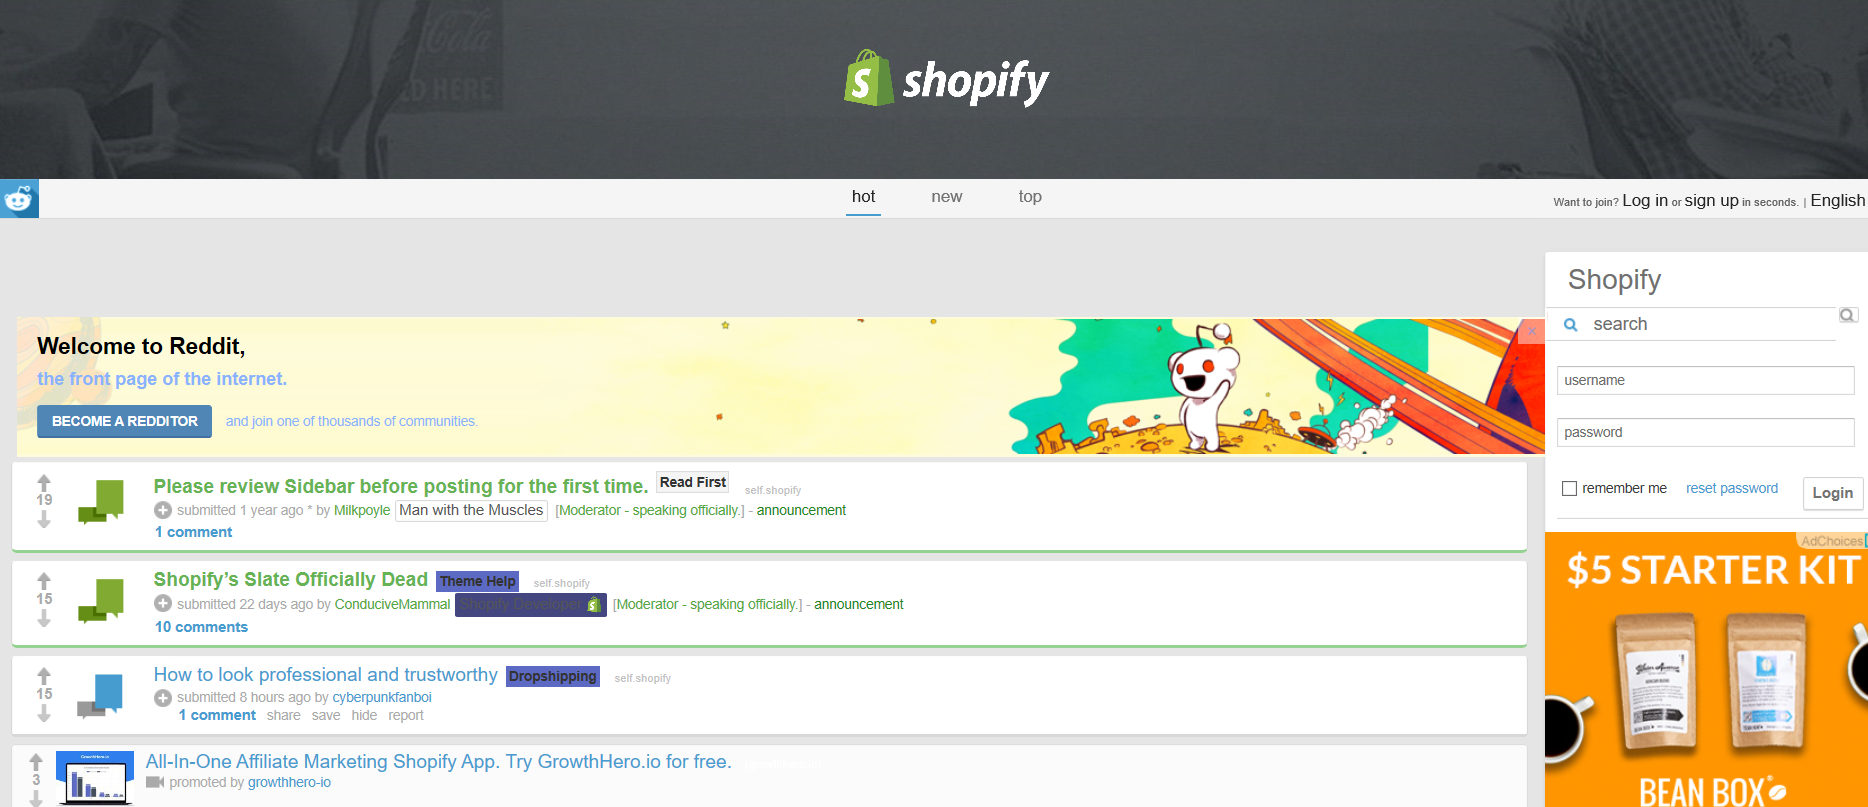 Shopify Subreddit